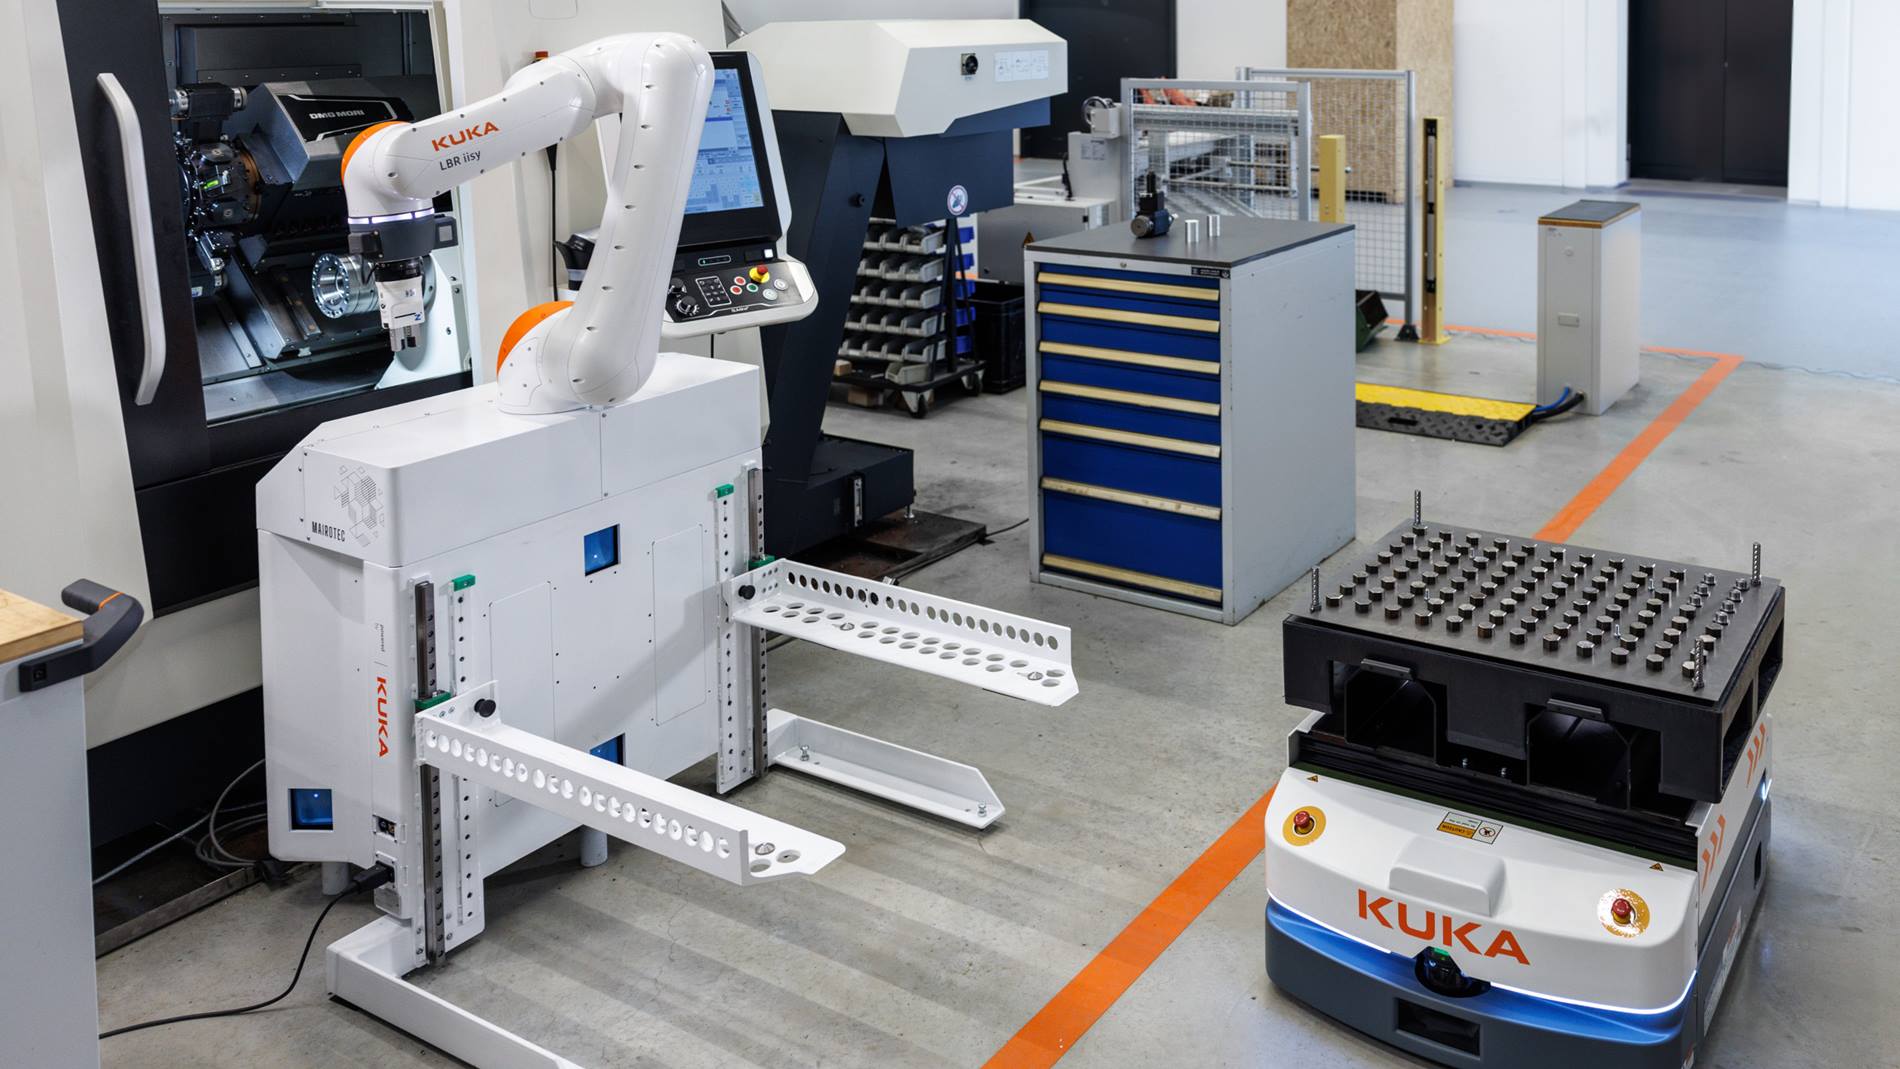 MAIROFlex iisy bestückt mithilfe eines Cobot-Arms eine CNC-Fräsmaschine, während eine mobile Plattform für die Materiallieferung zuständig ist. 